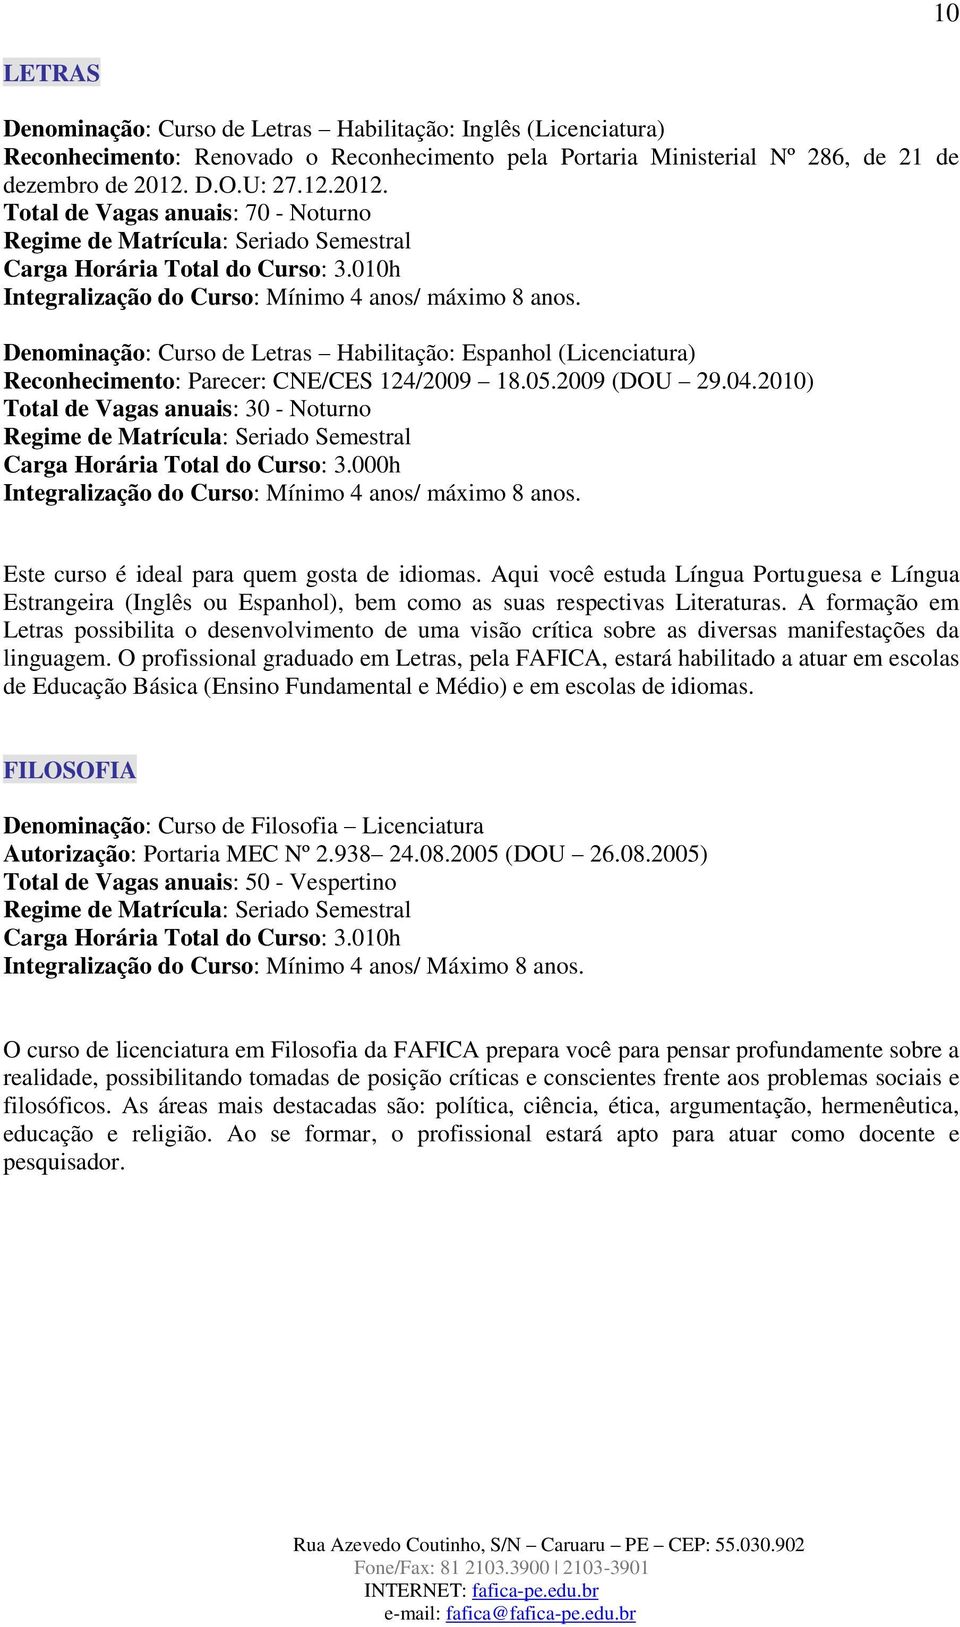 Denominação: Curso de Letras Habilitação: Espanhol (Licenciatura) Reconhecimento: Parecer: CNE/CES 124/2009 18.05.2009 (DOU 29.04.